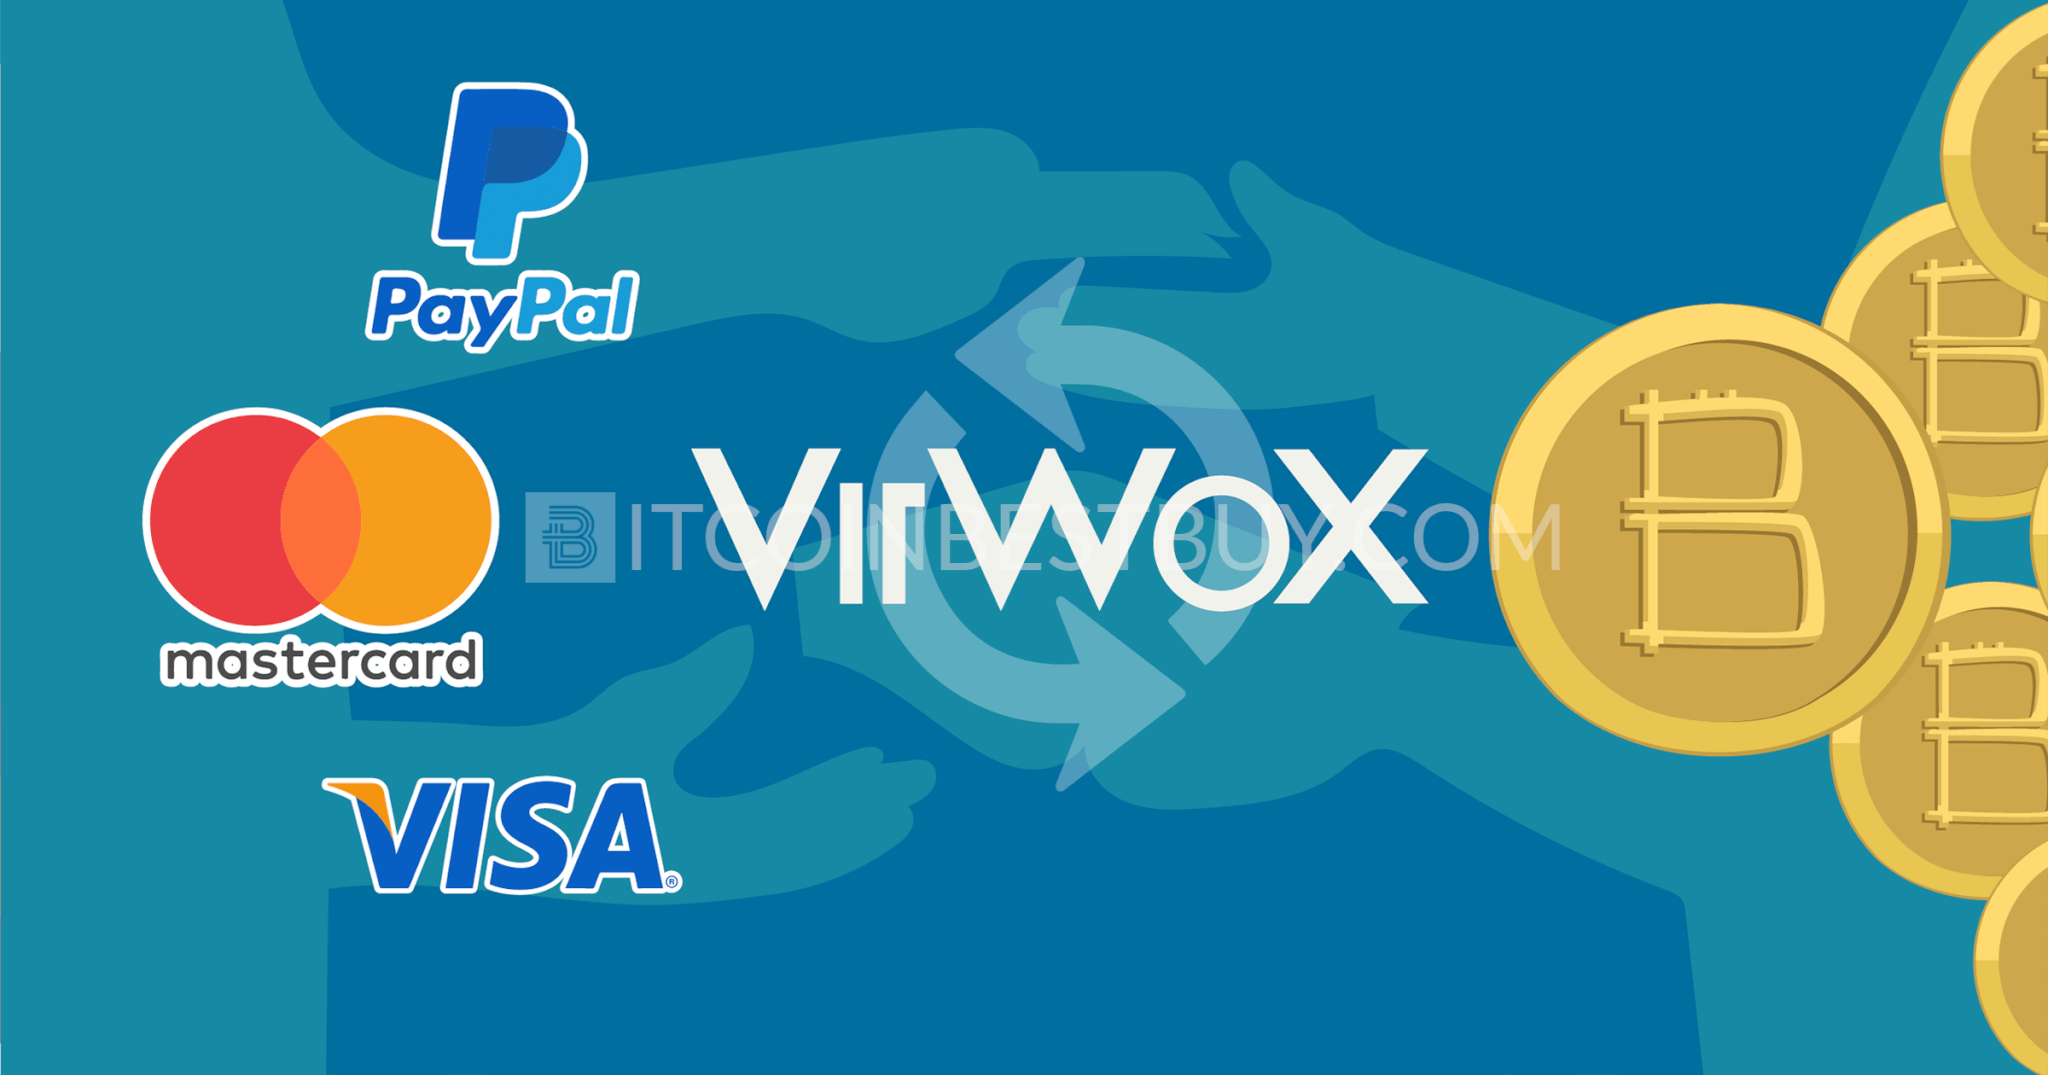 Virwox apžvalga: ar tai teisėtas ar sukčiavimas? - Blockchain 